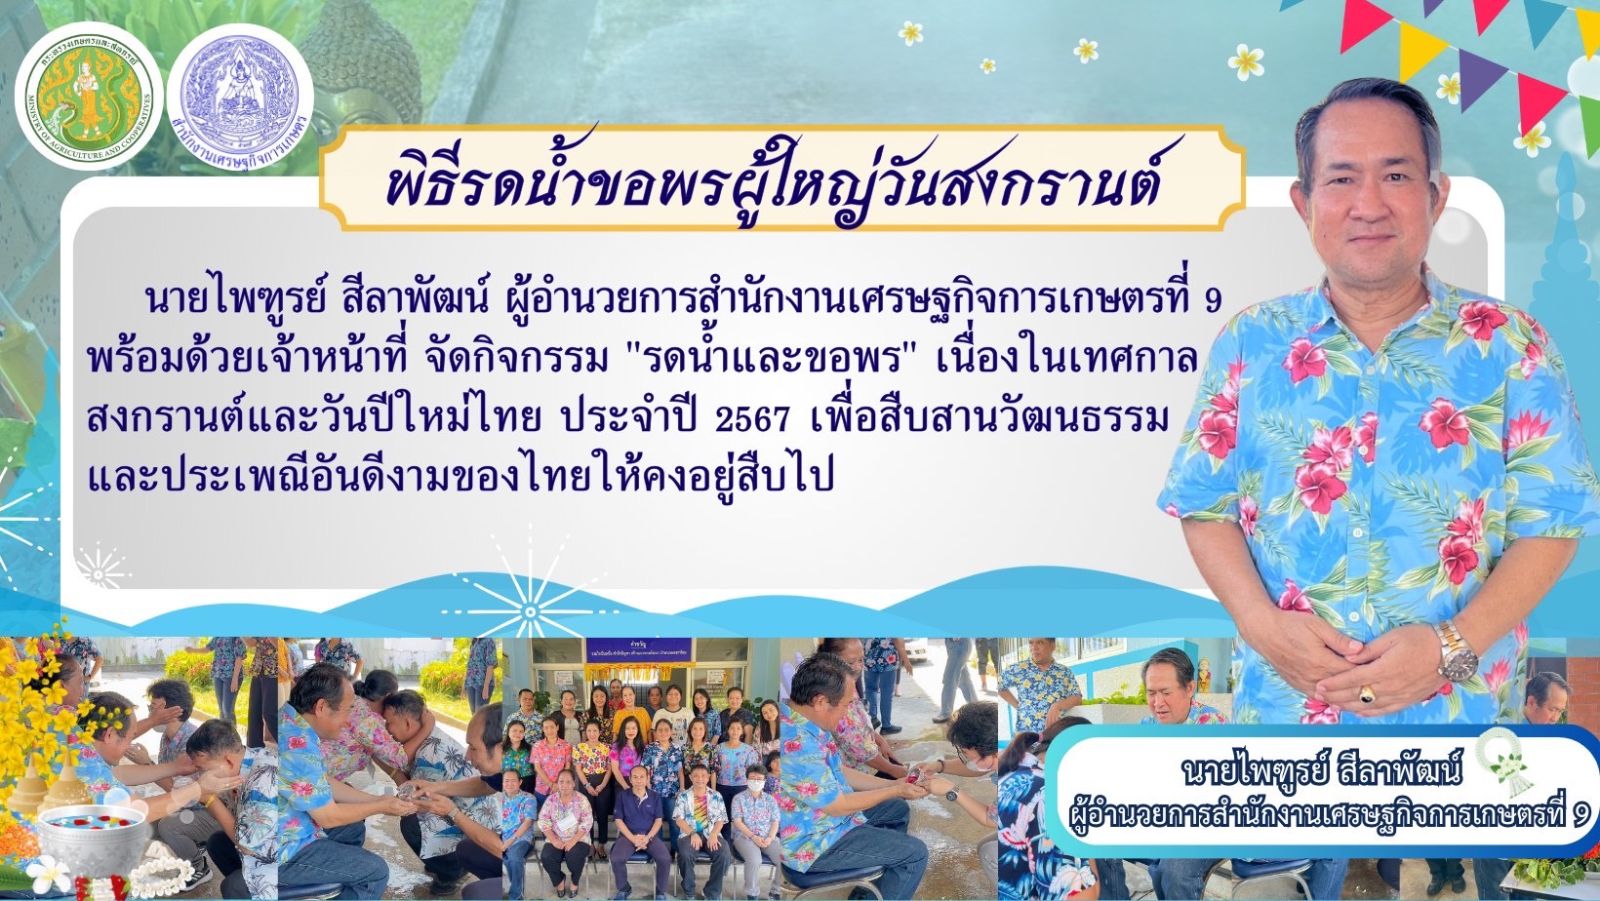 สศท.9 จัดกิจกรรม "รดน้ำและขอพร" เนื่องในเทศกาลสงกรานต์และวันปีใหม่ไทย ประจำปี 2567 